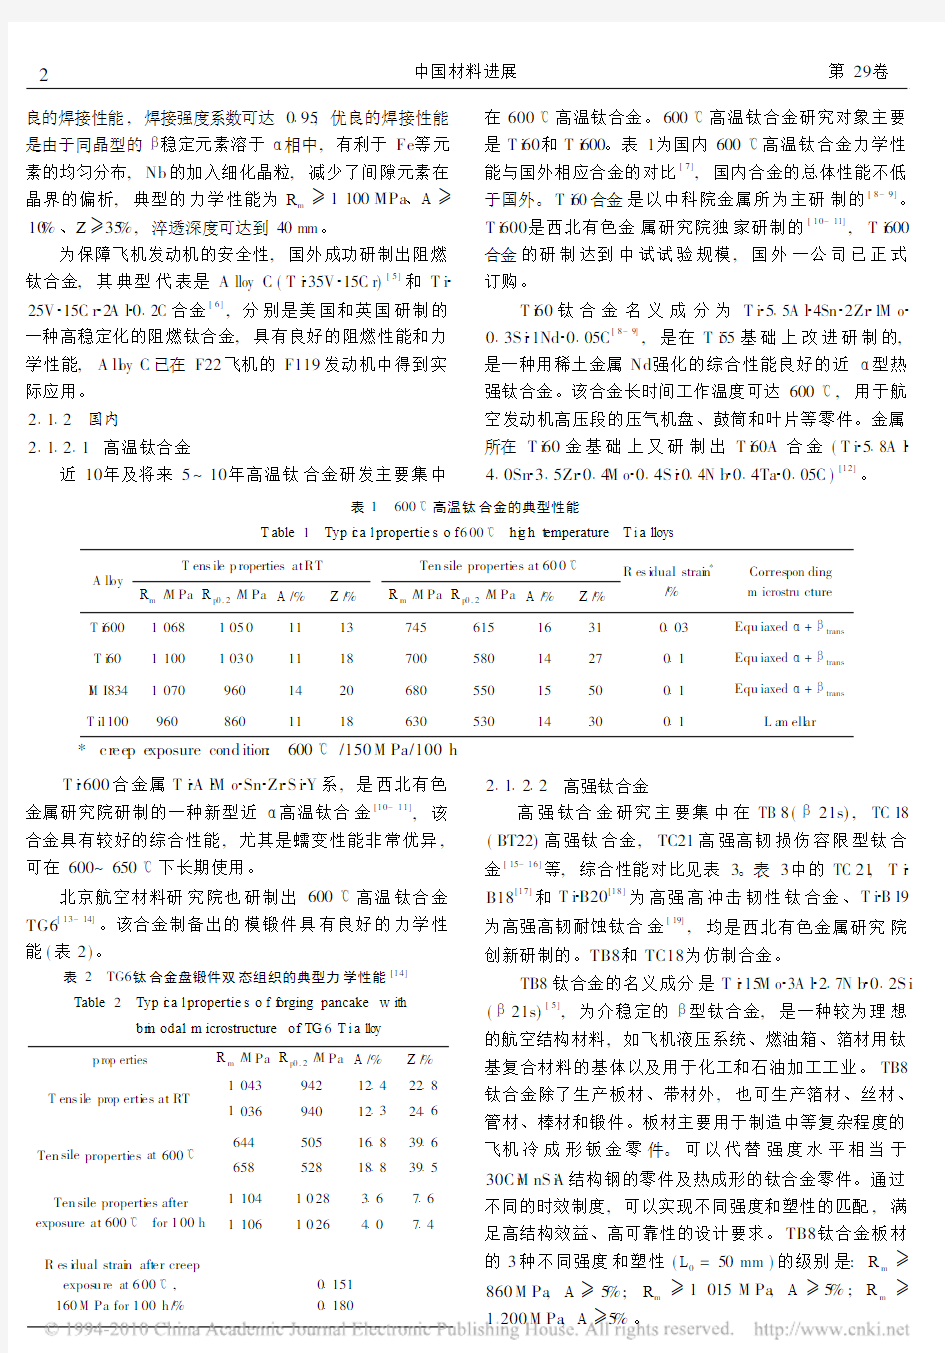 国内外钛合金研究的发展现状及趋势-赵永庆